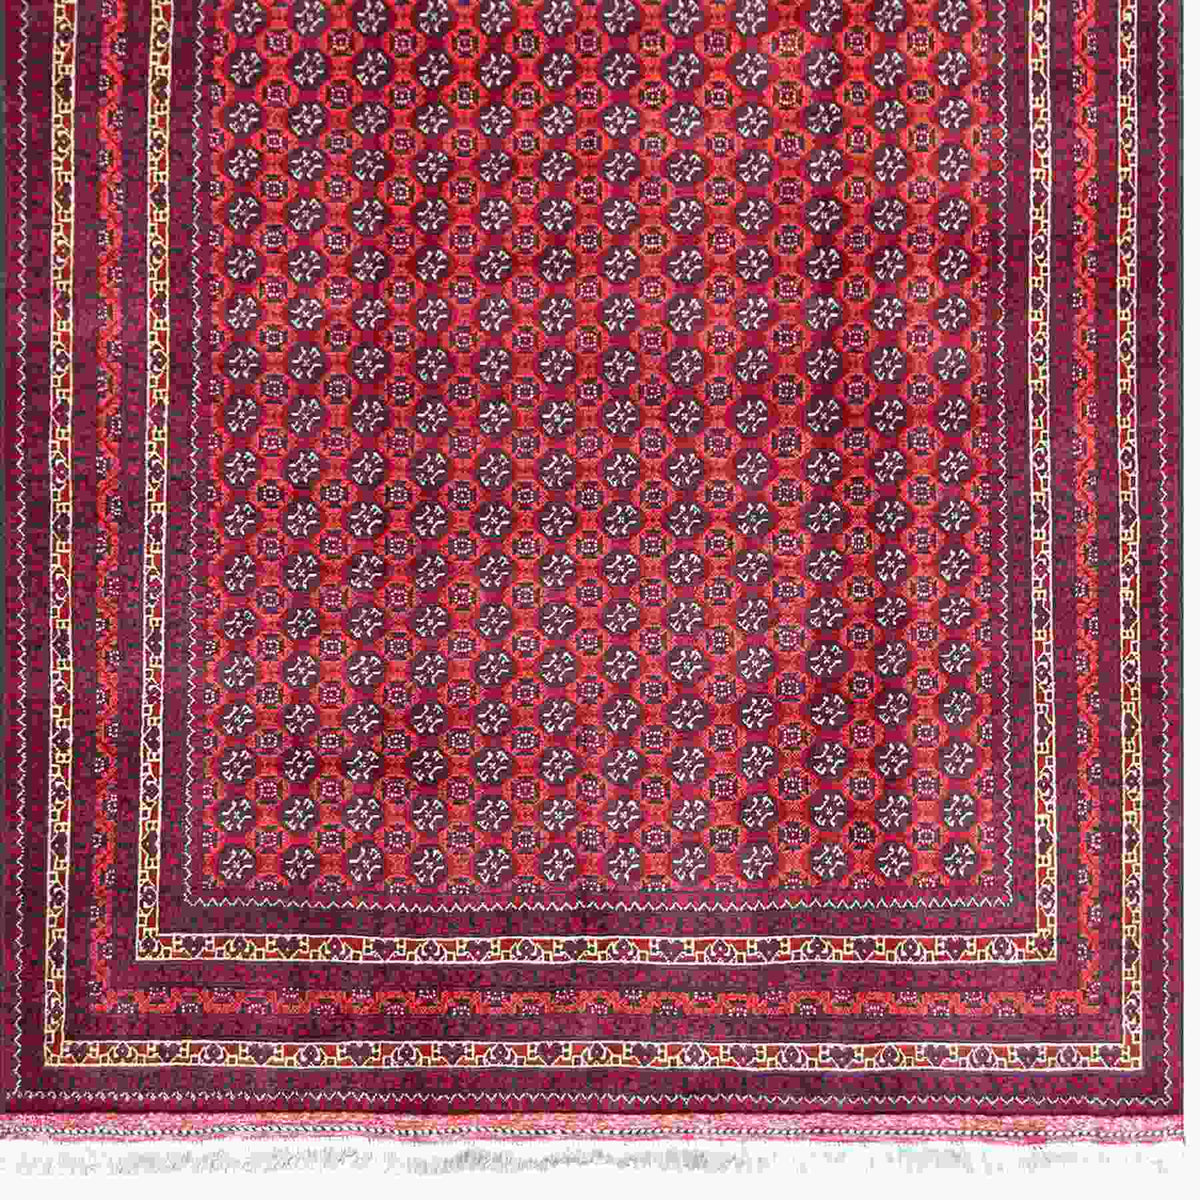 Super Fine Hand-knotted Wool Turkmen Rug 150cm x 195cm